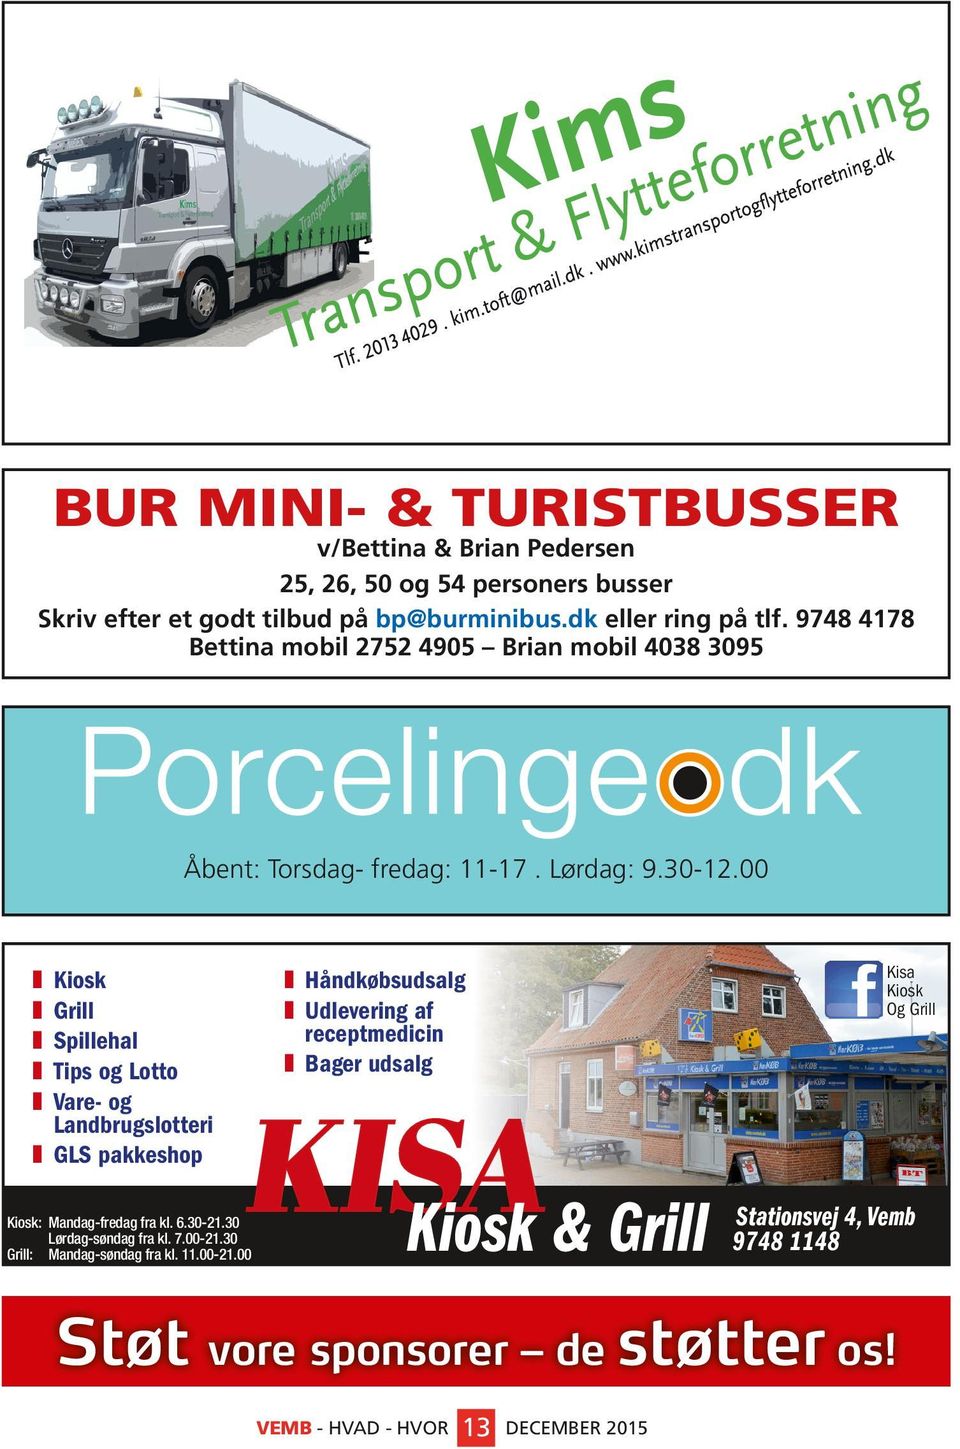 00 Kiosk Grill Spillehal Tips og Lotto Vare- og Landbrugslotteri GLS pakkeshop Visitkort-1.